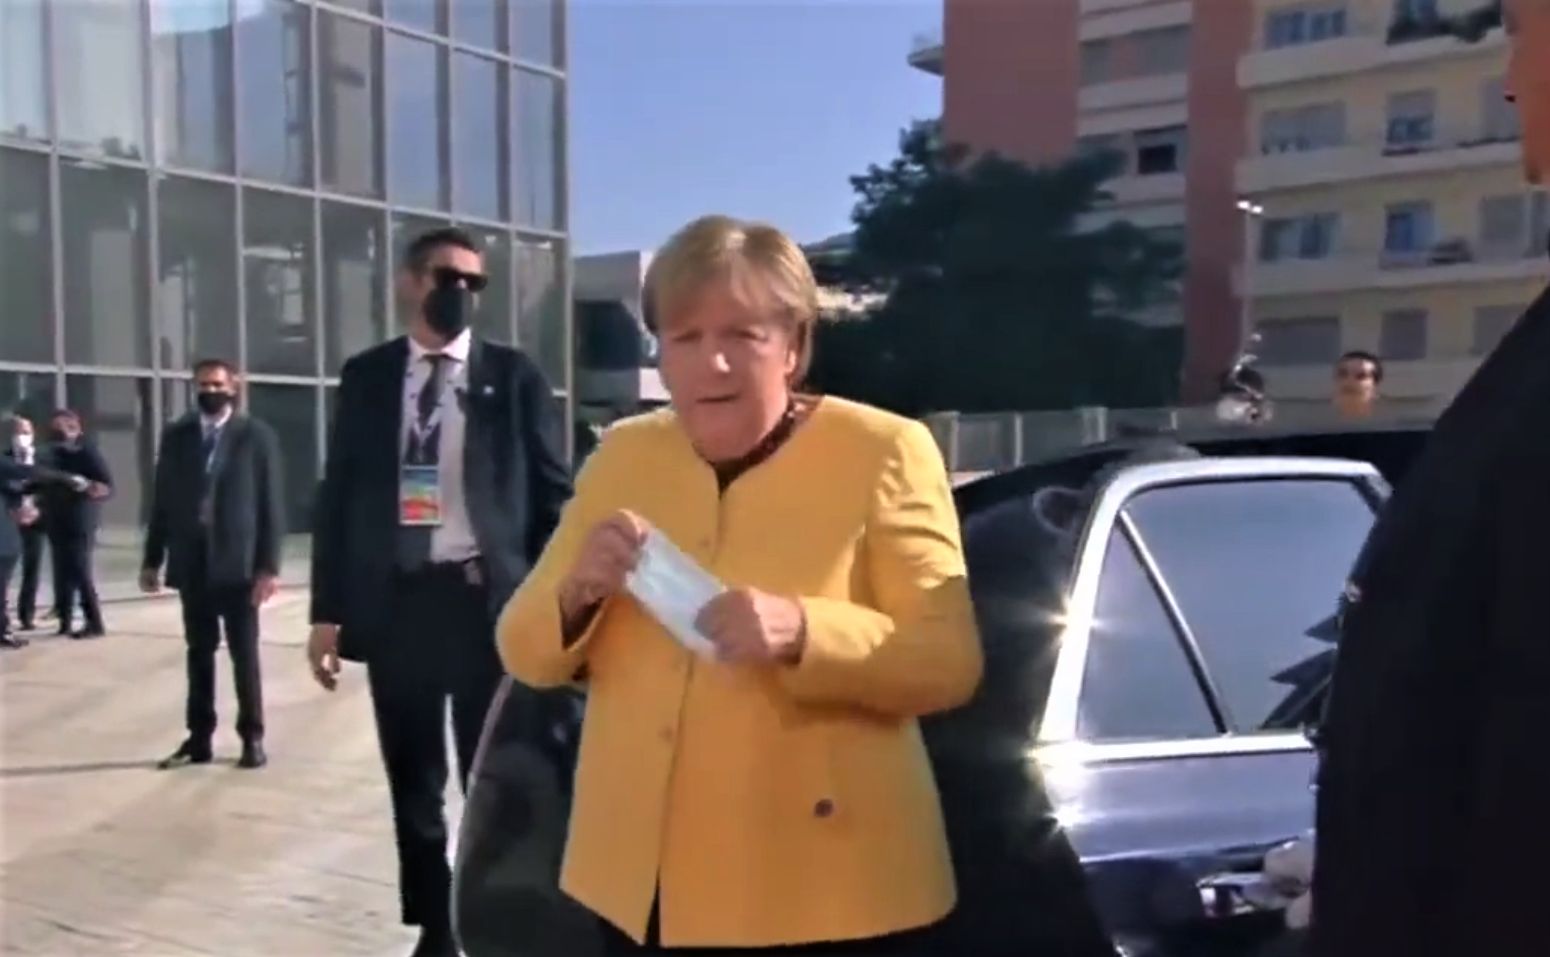 Merkel publicznie zaliczyła wpadkę. "Kompromitujące nagranie"